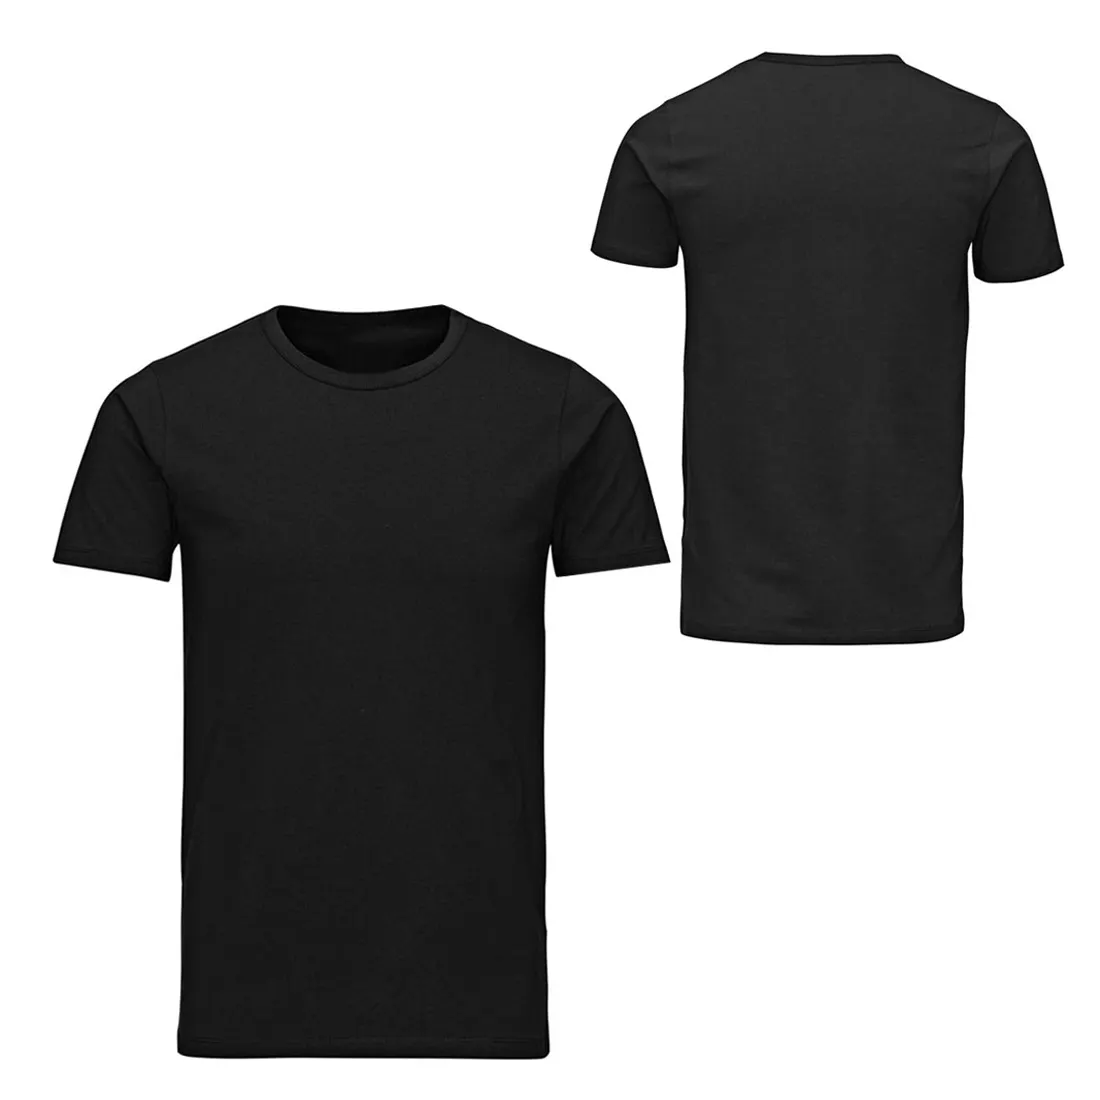 Kaus oblong cetak Logo manufaktur khusus 100% katun kualitas kelas satu t-shirt polos ukuran besar